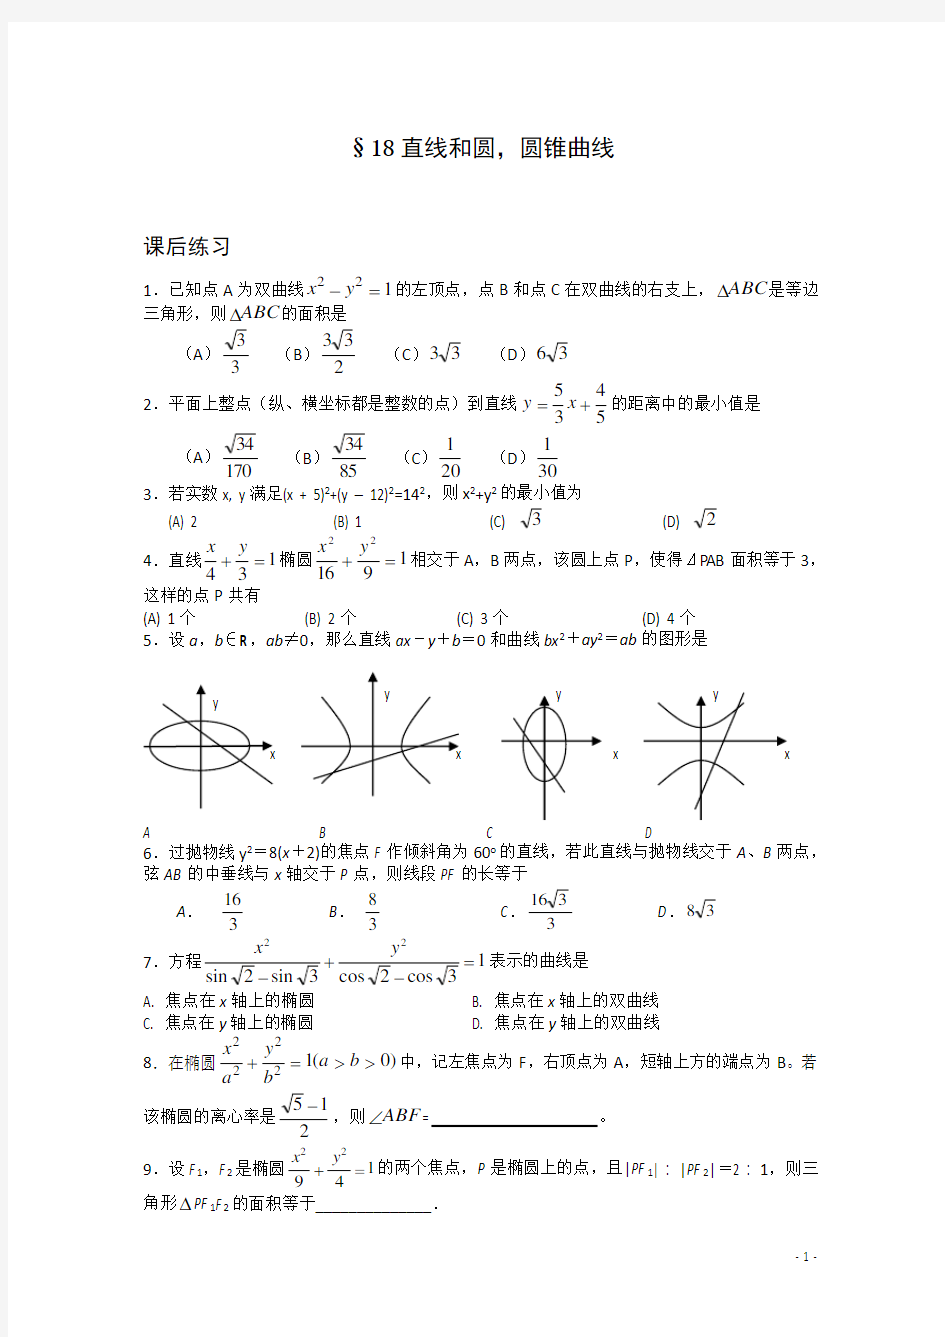 高中数学竞赛讲义-直线和圆、圆锥曲线(练习题)